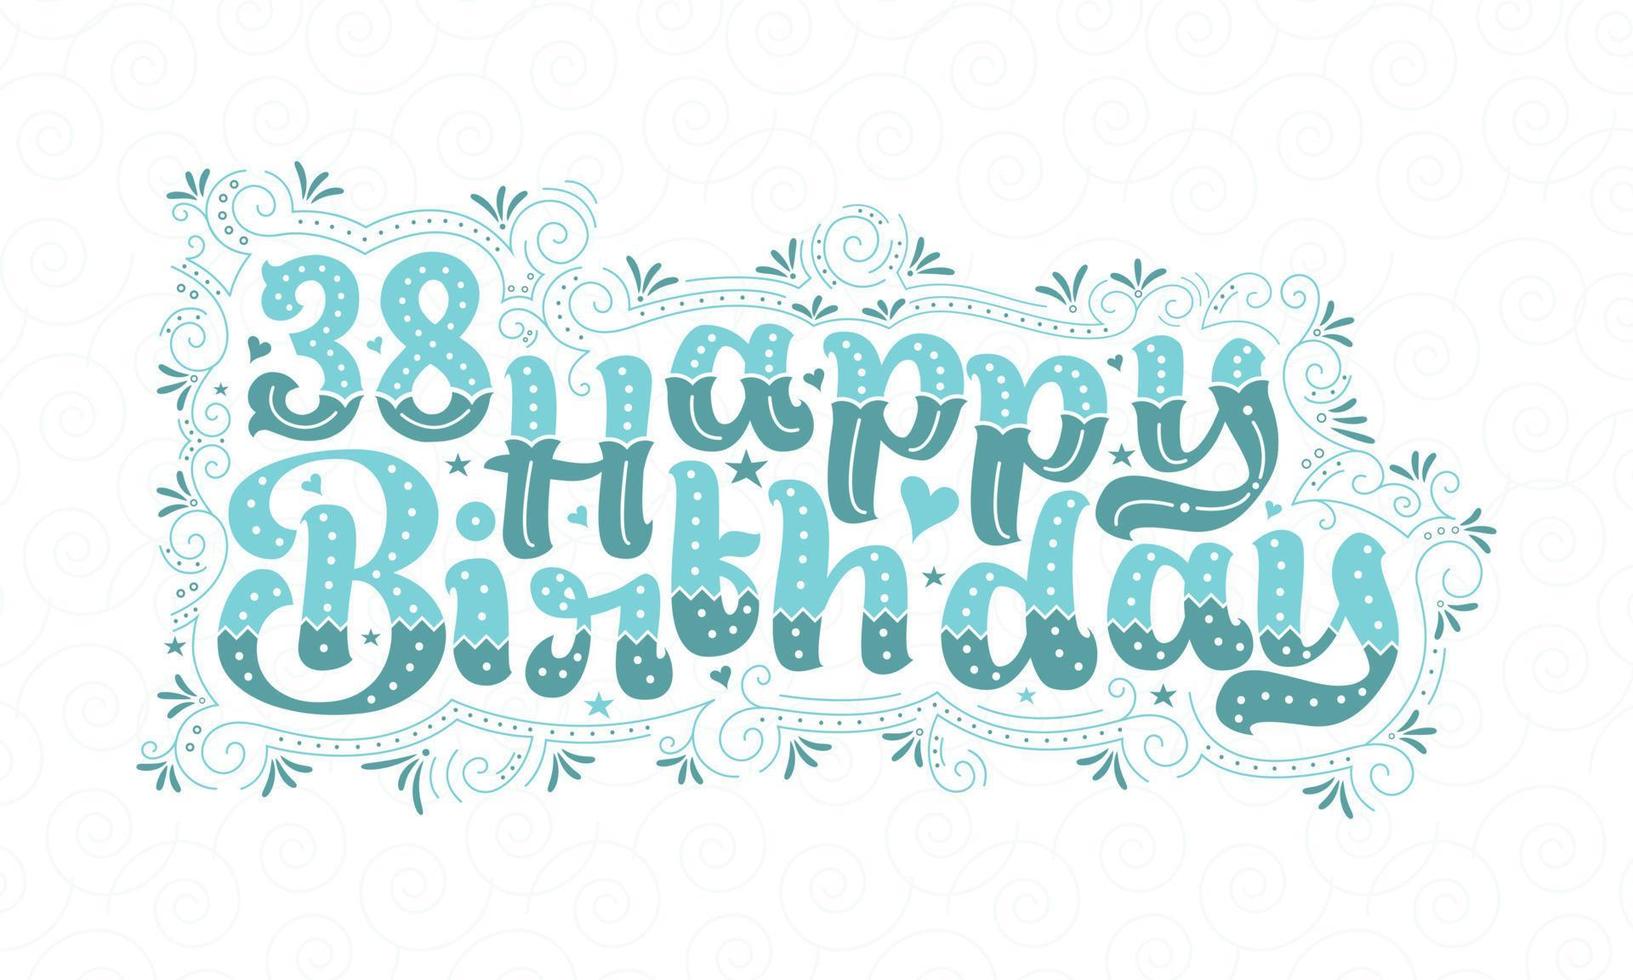 38° buon compleanno lettering, 38 anni compleanno bellissimo design tipografico con puntini, linee e foglie acqua. vettore